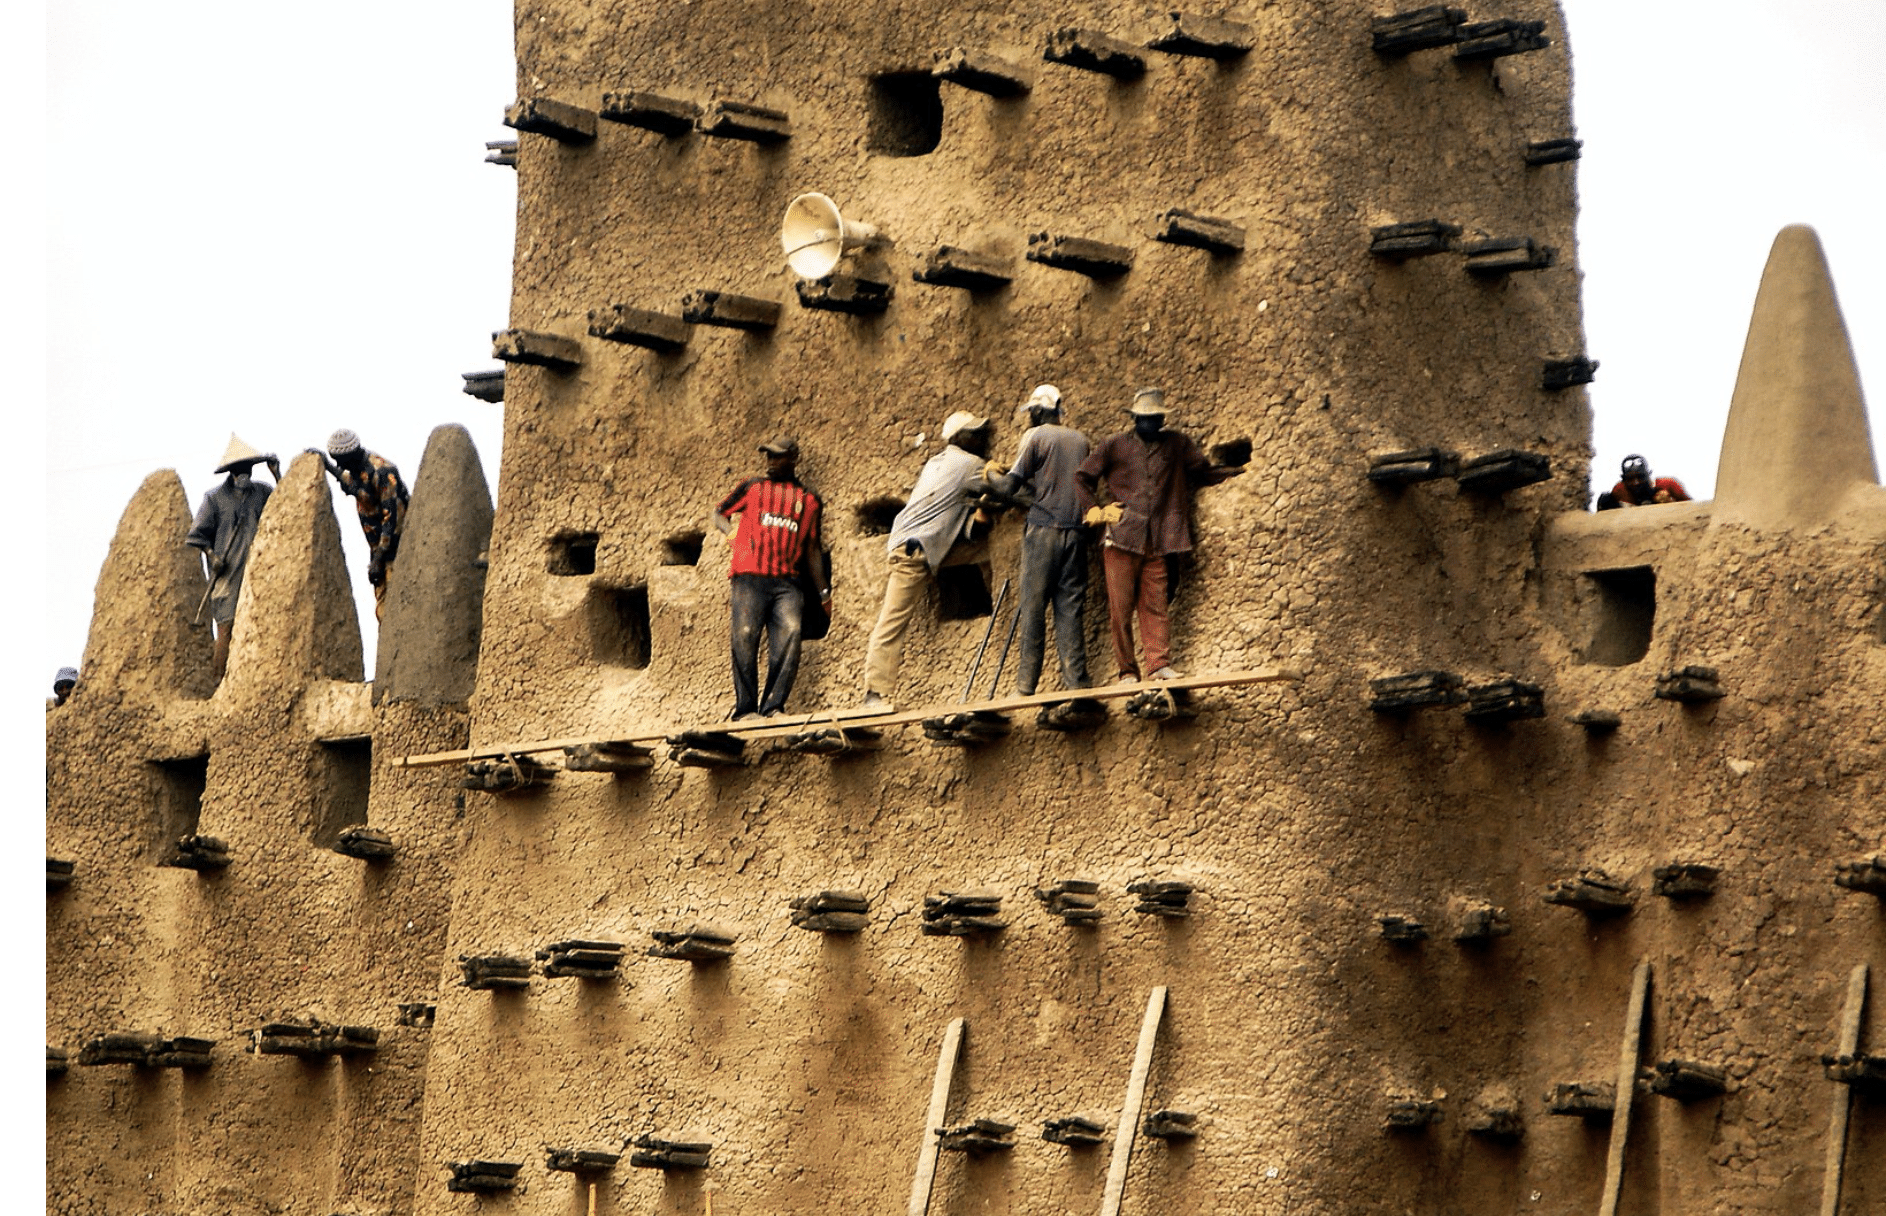 Jährliche Reparatur an der Großen Moschee  von Djenné in Mali: Die Palmstämme stabilisieren die Wände der Moschee (Lehm) und dienen bei Reparaturen selbst als Gerüst. Foto: Wikimedia Commons / Ralf Steinberger